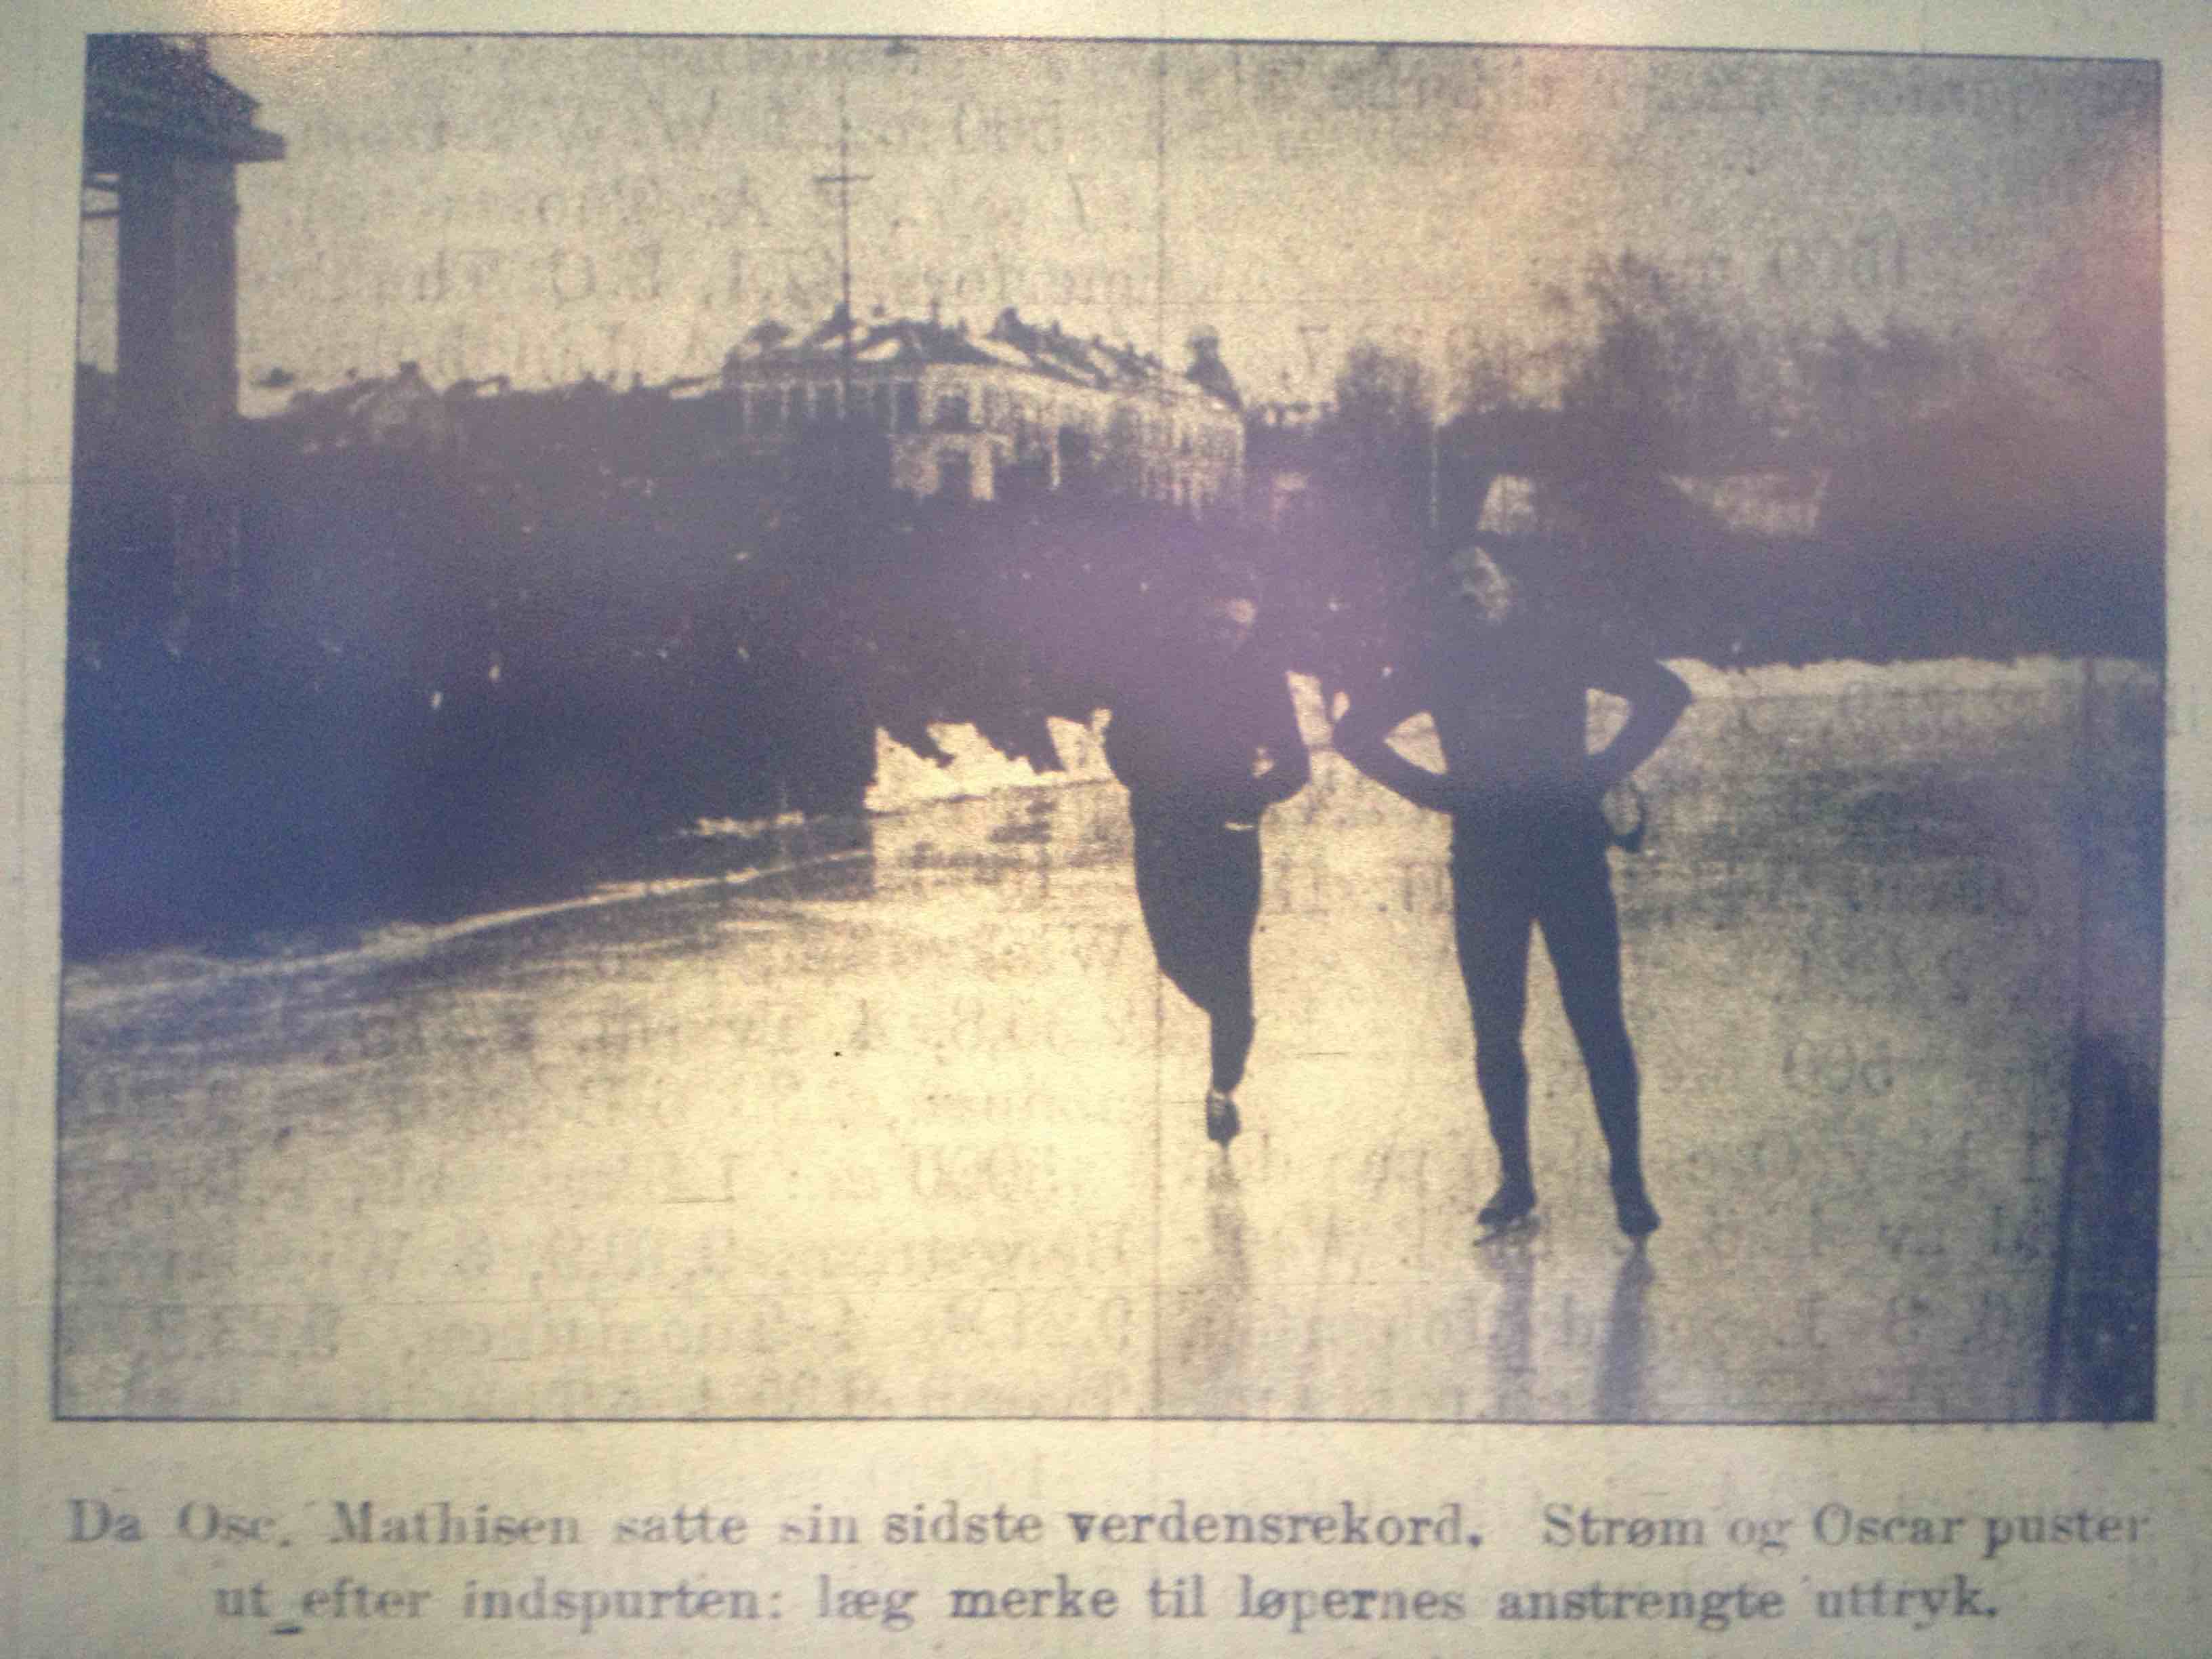 Oscar Mathisen and Kristian Strøm after their 5000m race, from Norsk Idrætsblad